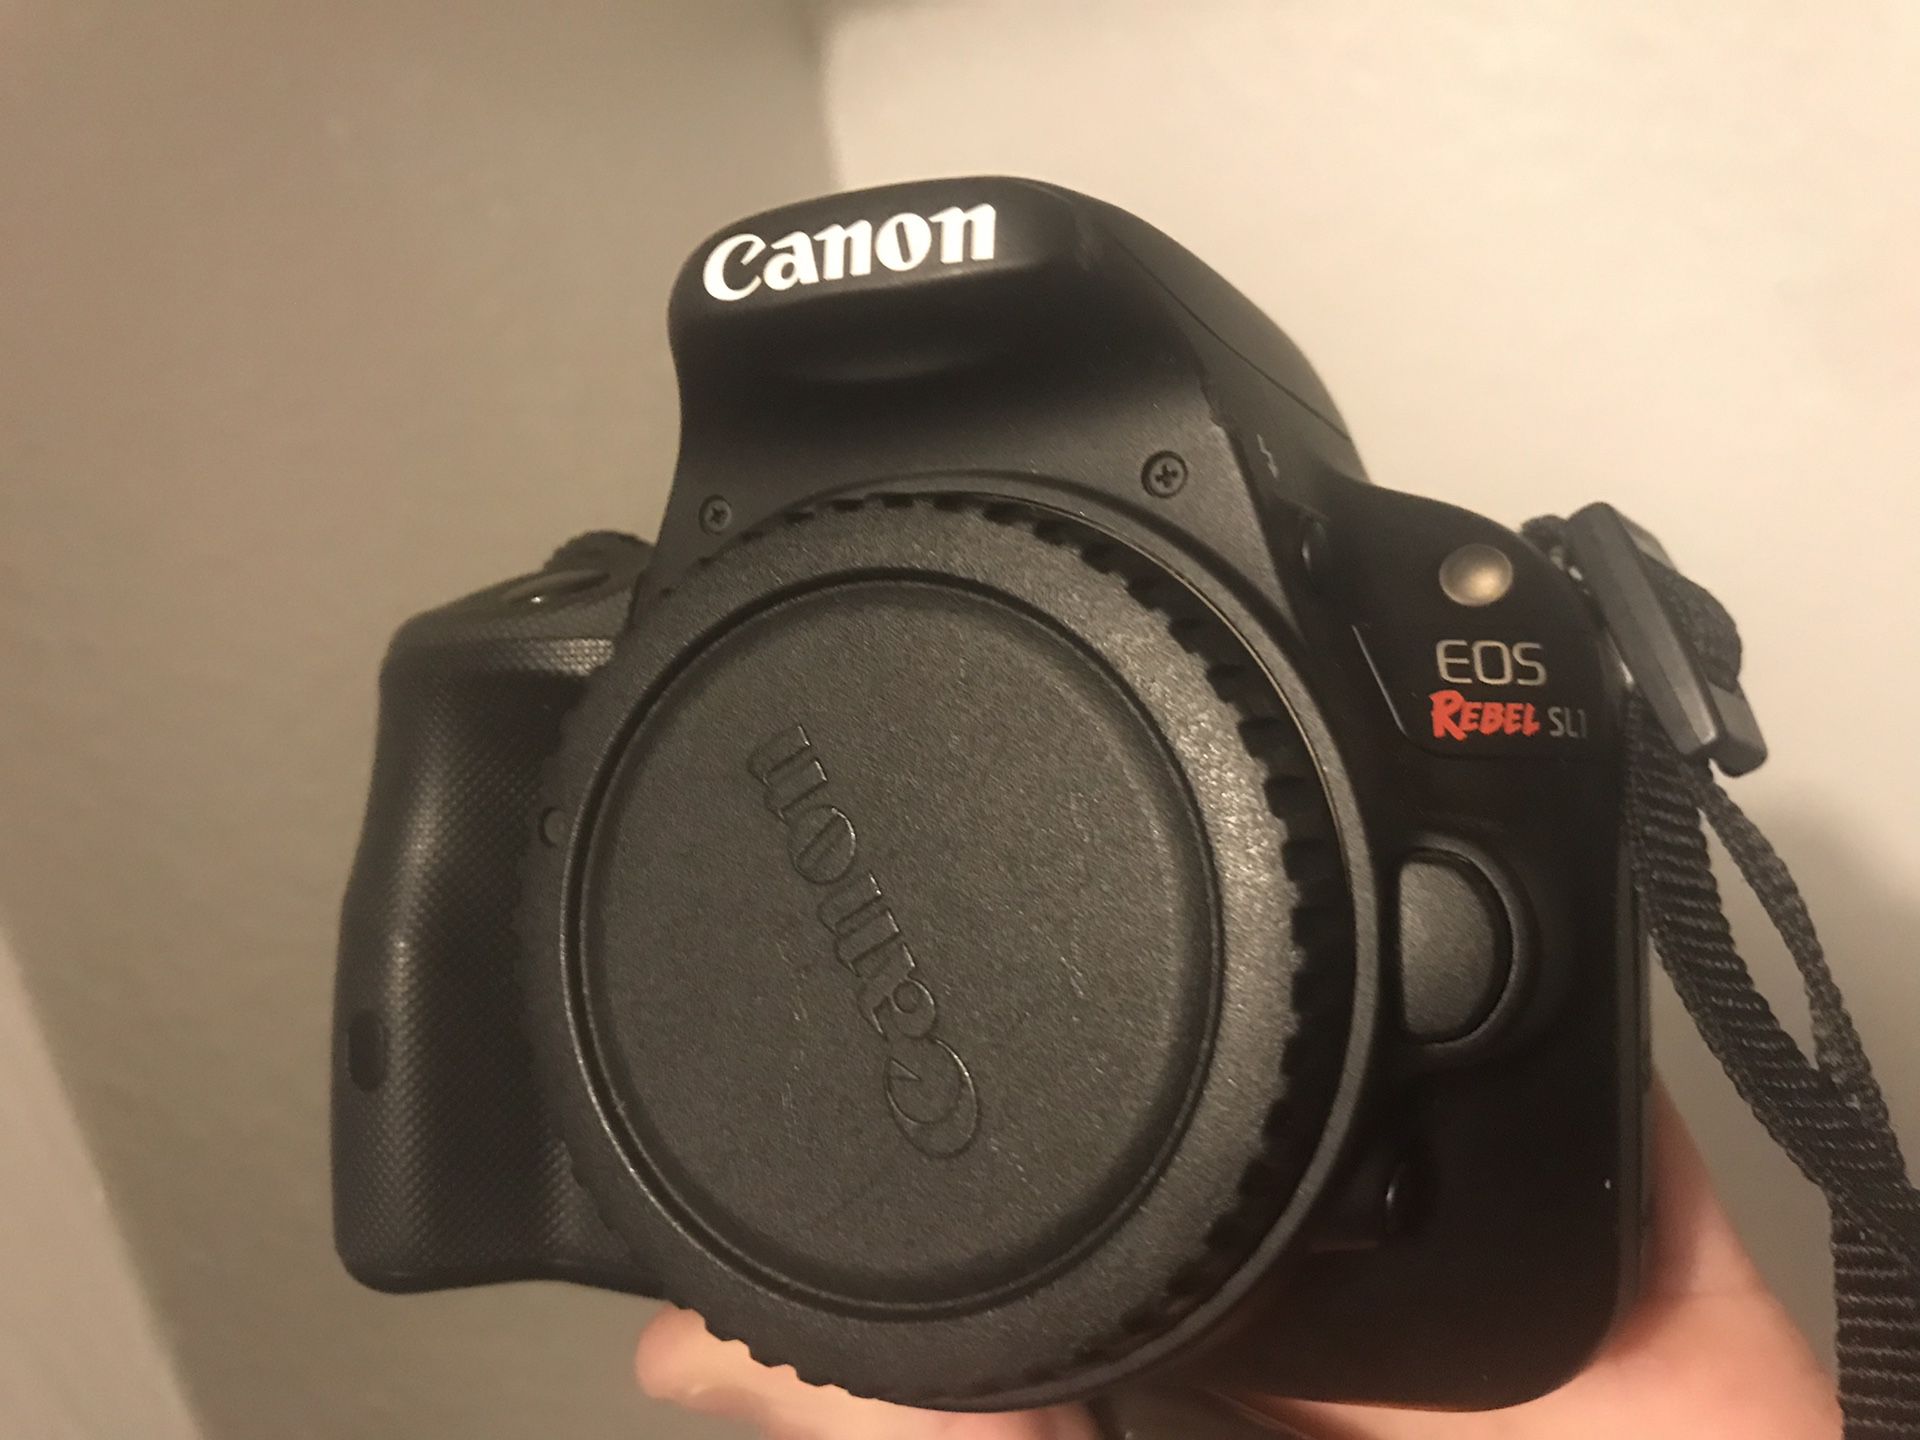 Canon E0S Rebel SL1 with Lenses